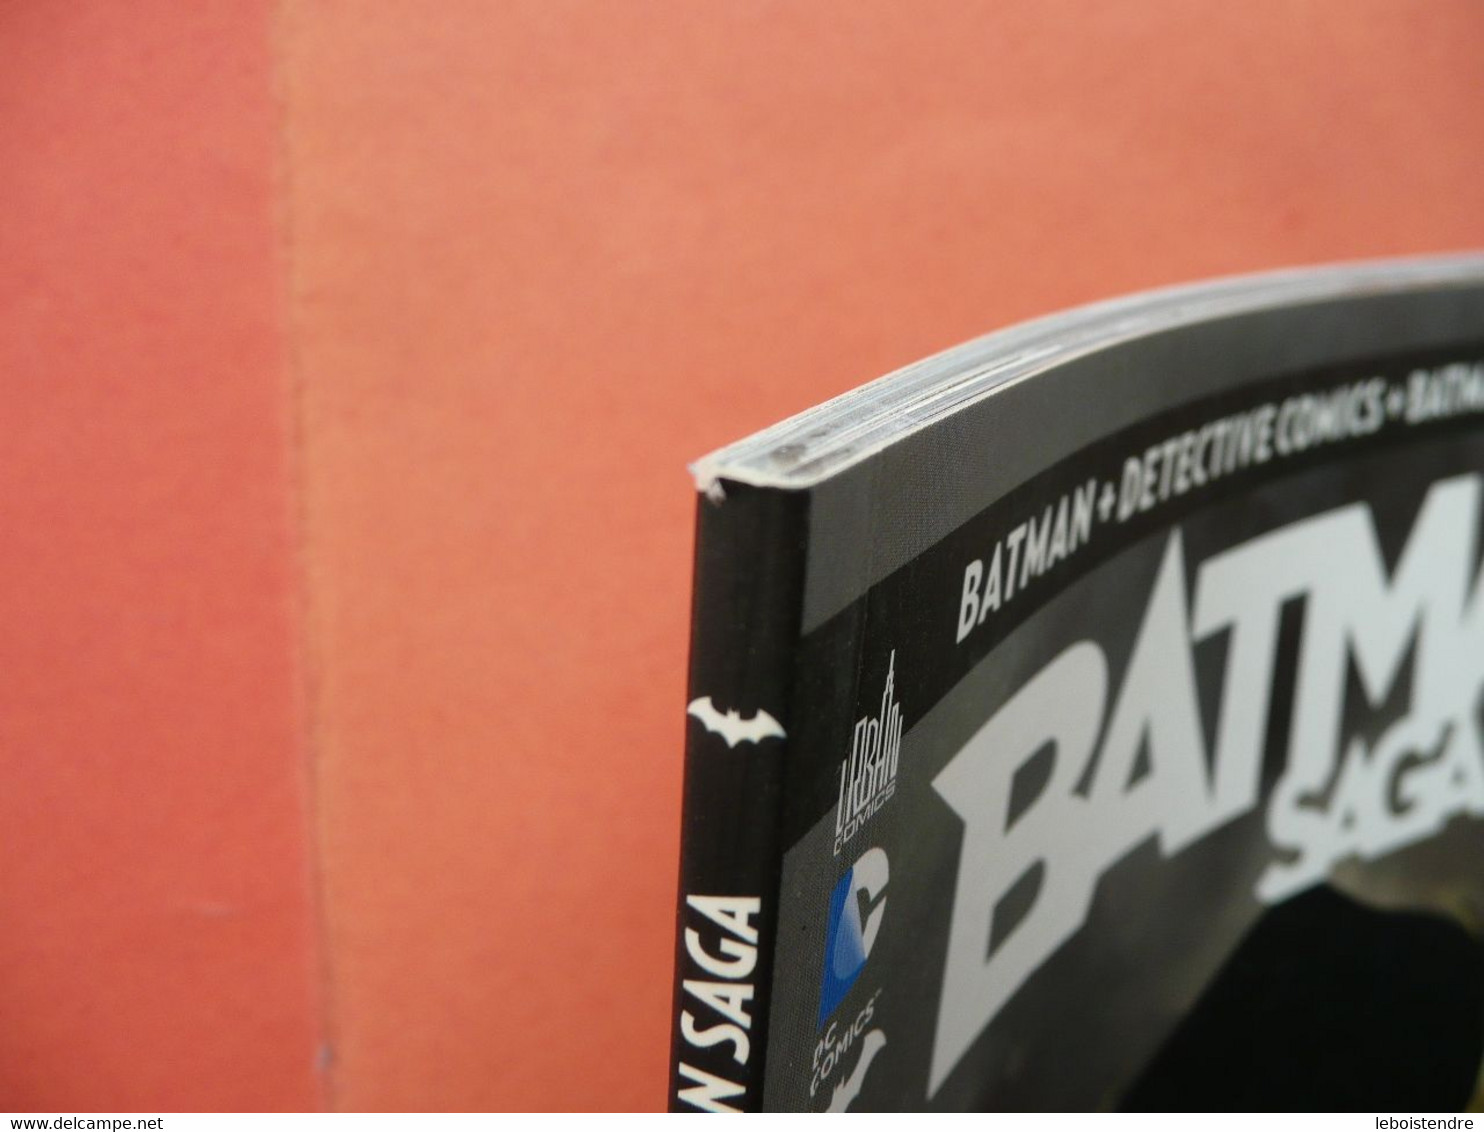 BATMAN SAGA N 4 SEPTEMBRE 2012 BATGIRL ROBIN DETECTIVE COMICS 4 URBAN COMICS DC COMICS TBE - Batman